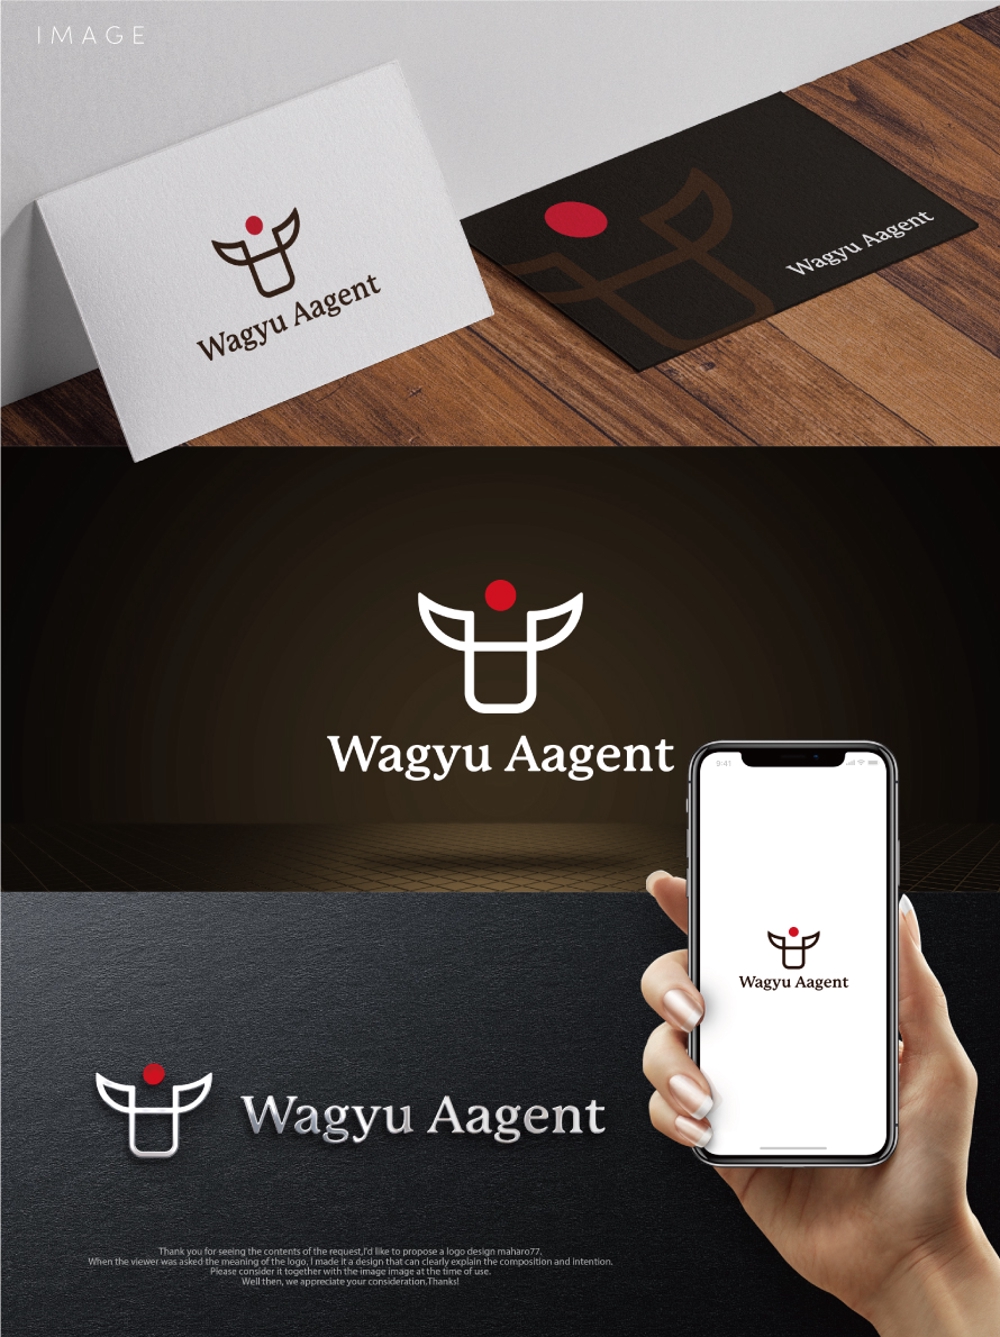 Wagyu-Aagent_04.jpg